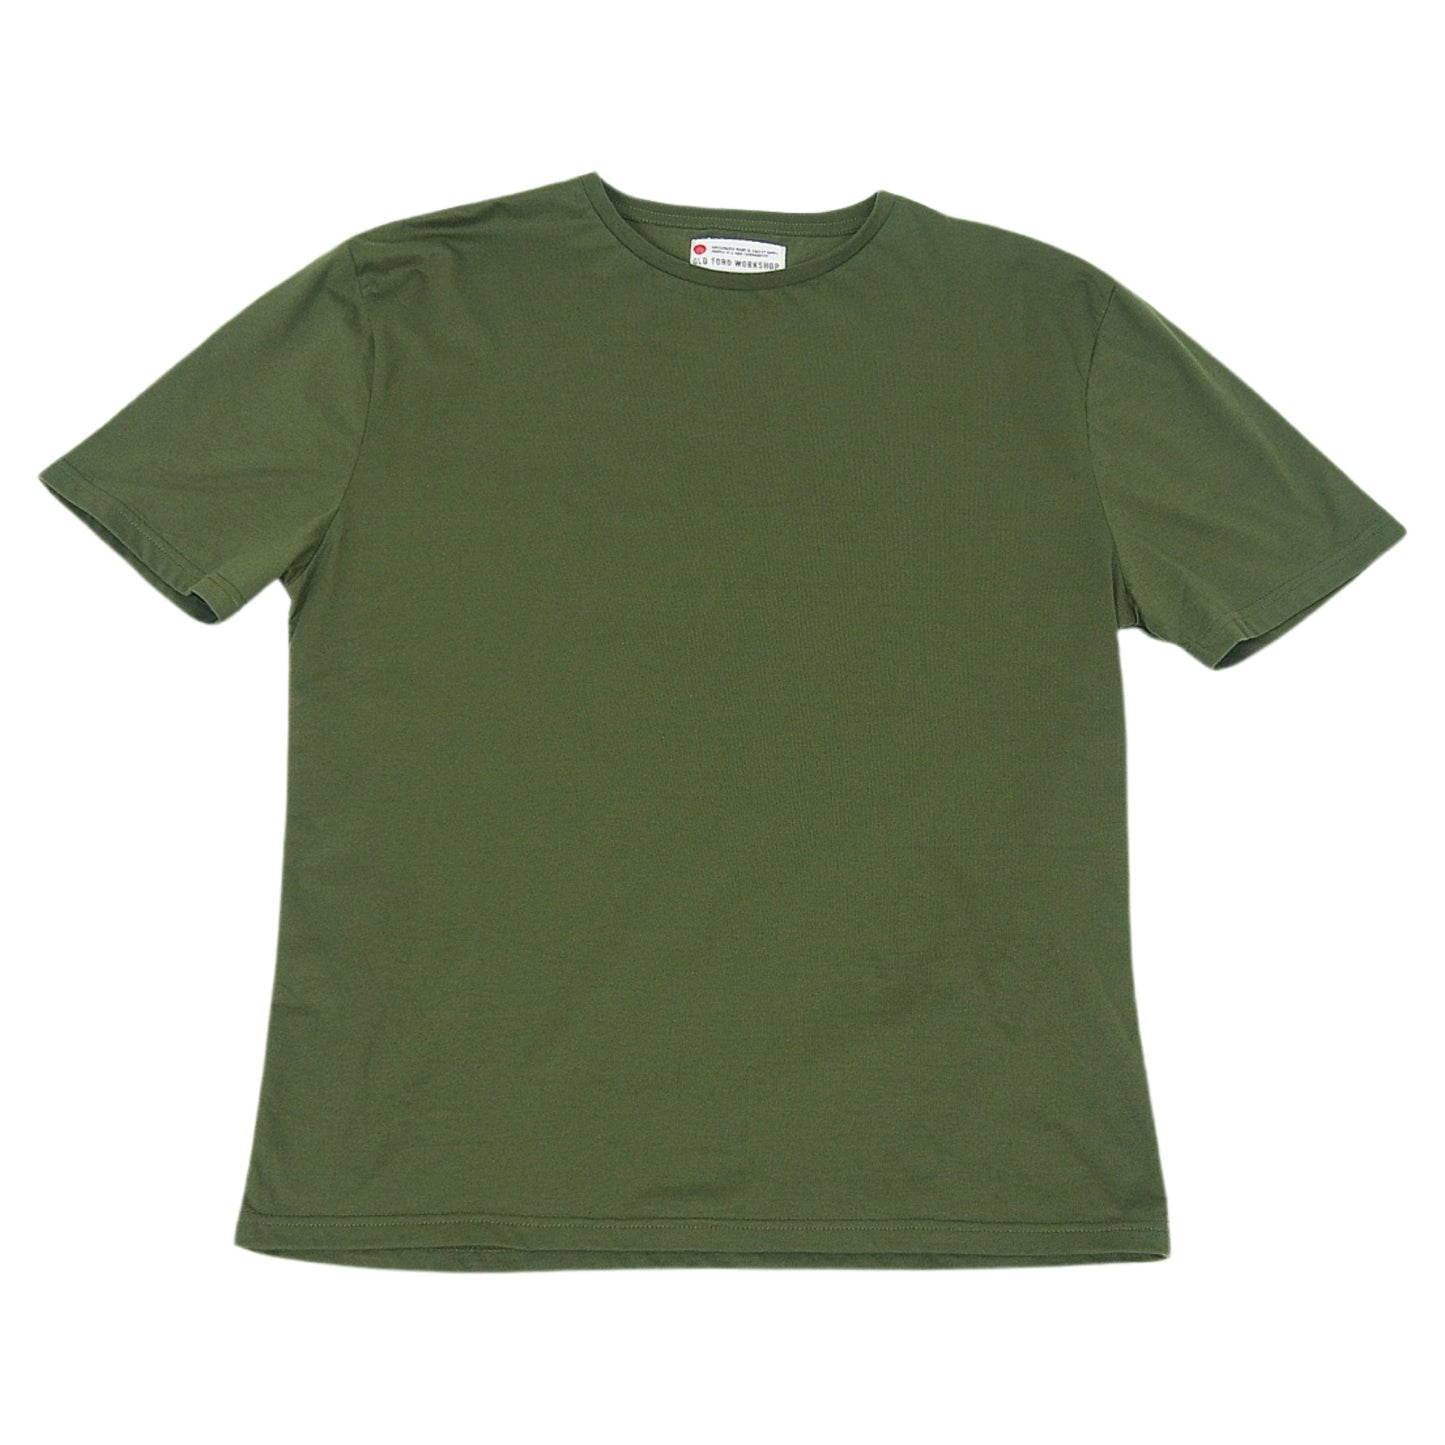 Original T shirt / Army